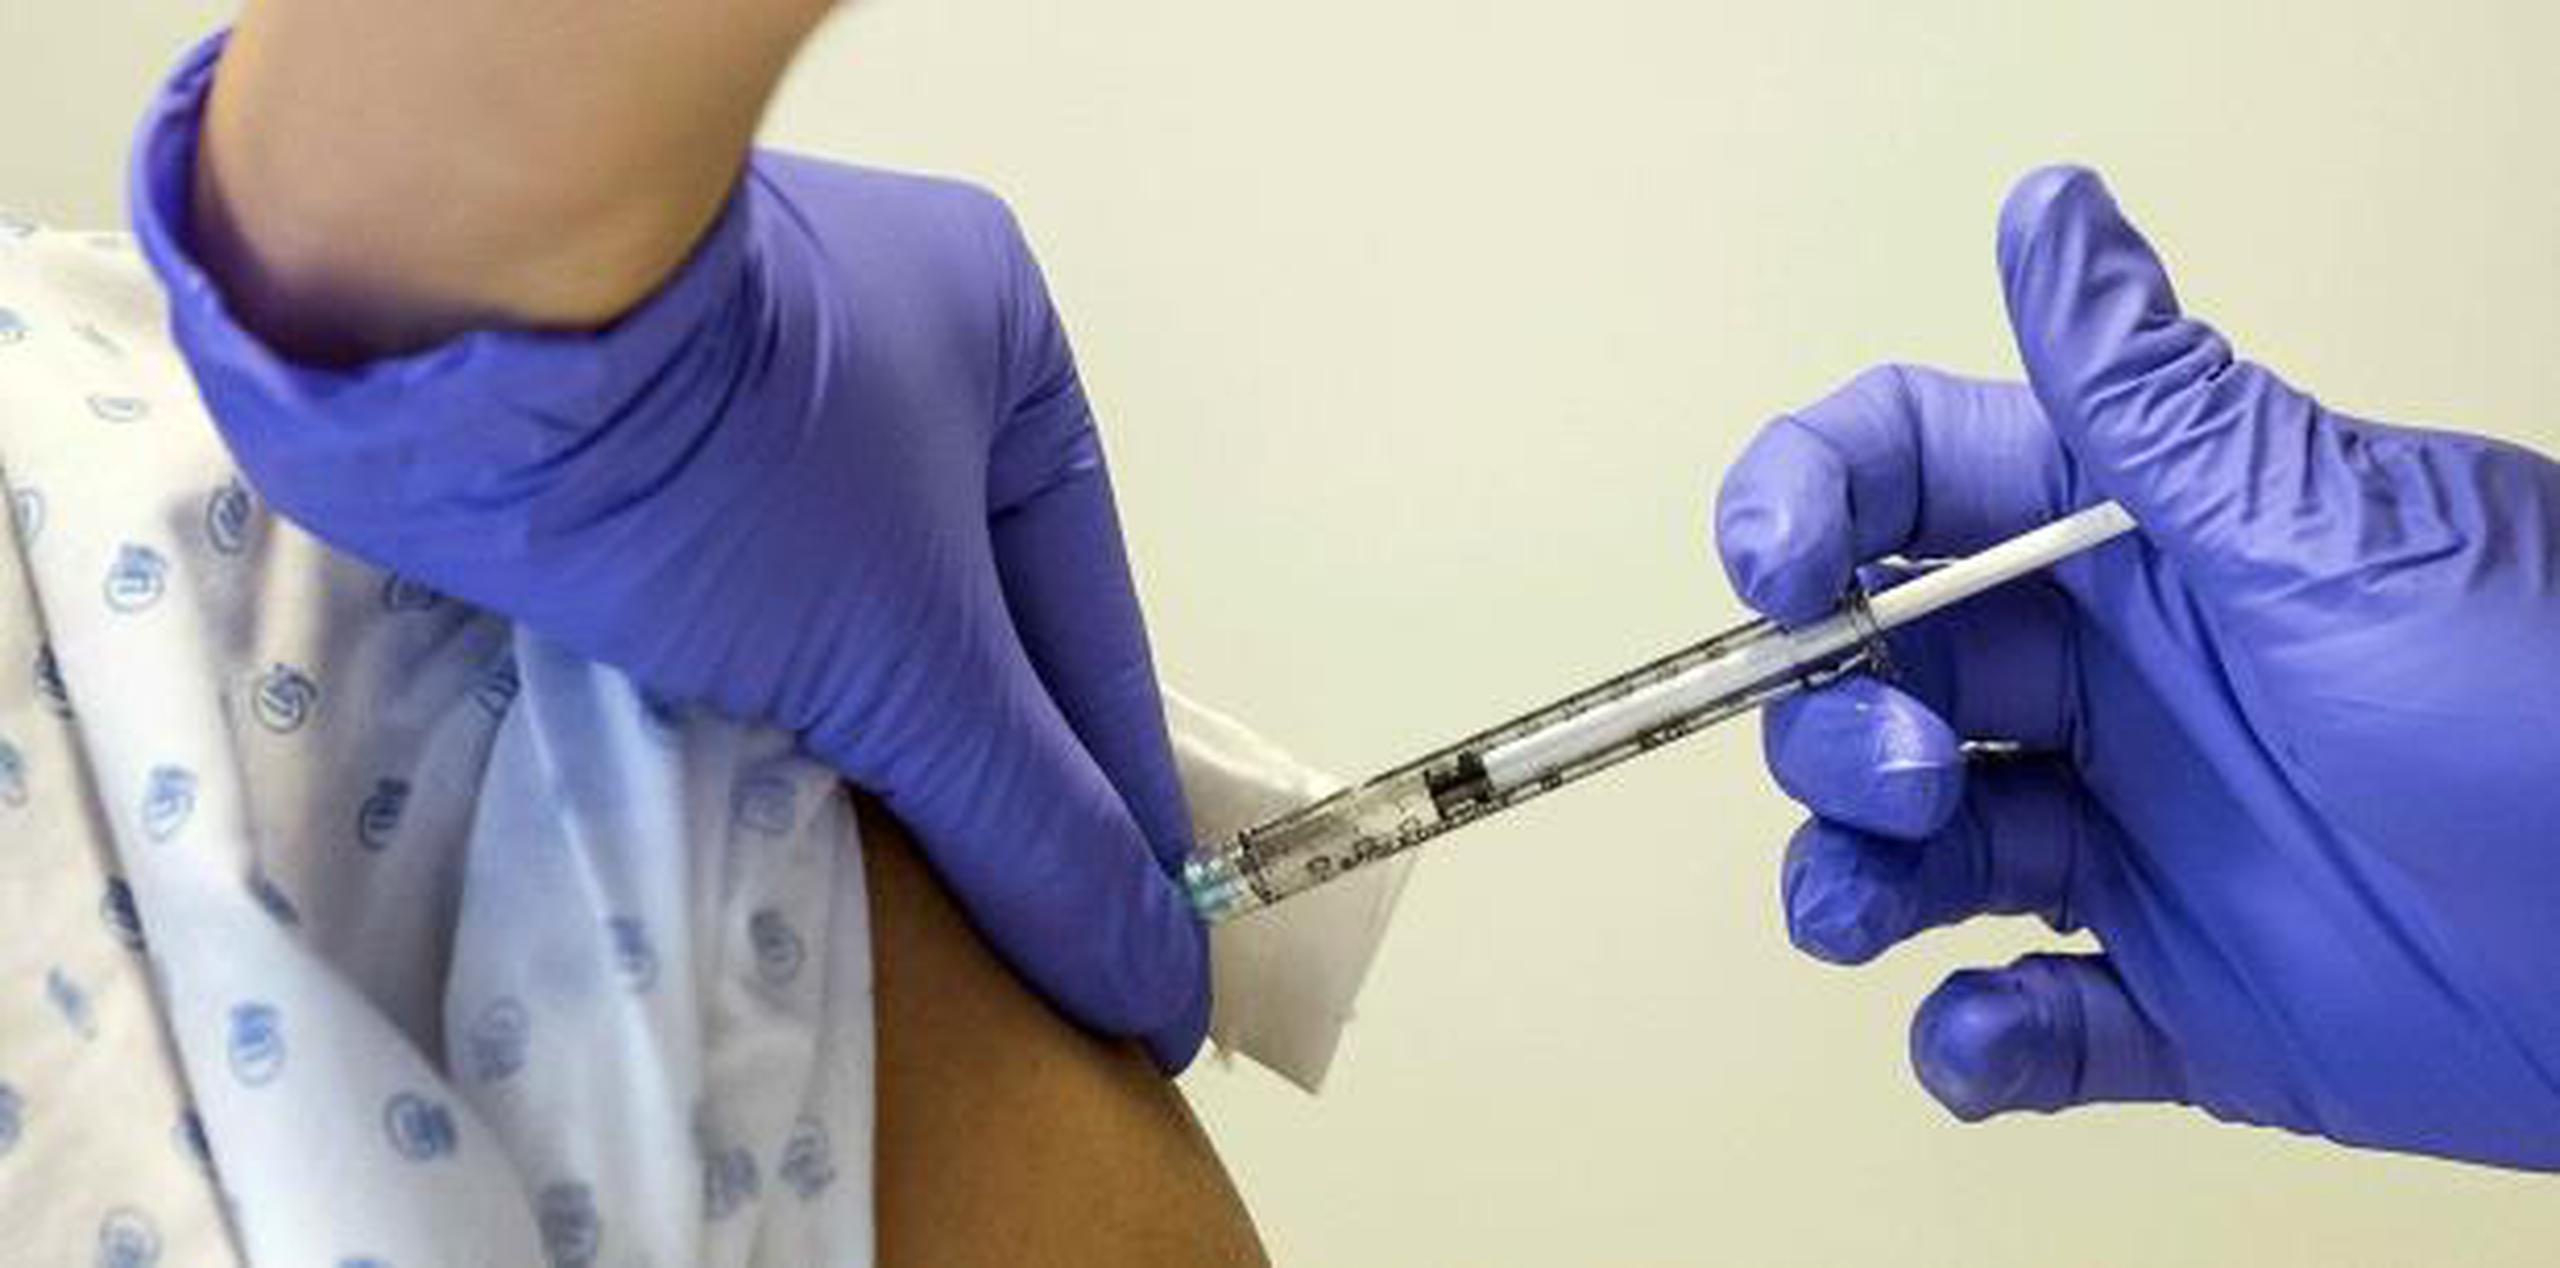 Más de 1,600 personas han sido vacunadas. (EFE / Jean-Christophe Bott)